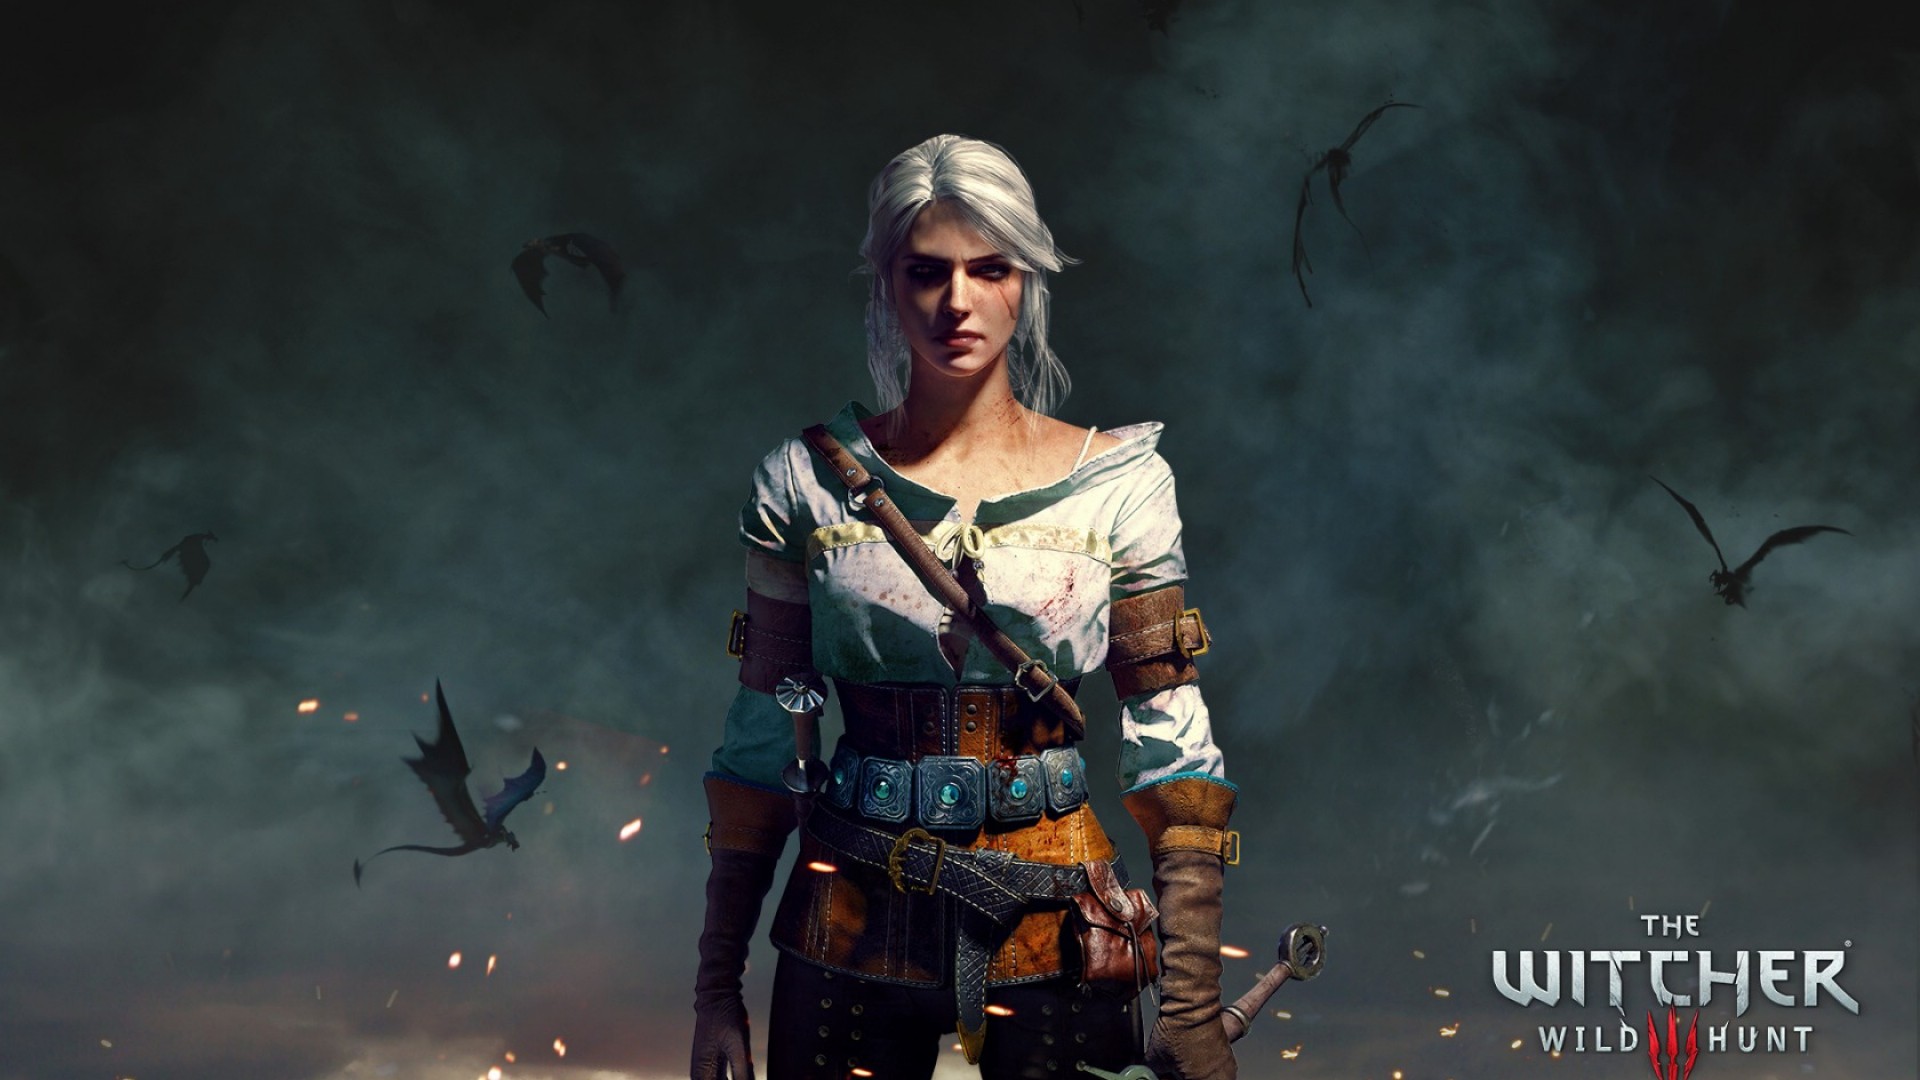 Cirilla Fiona Elen Riannon, The Witcher 3: Wild Hunt, Video games Wallpaper